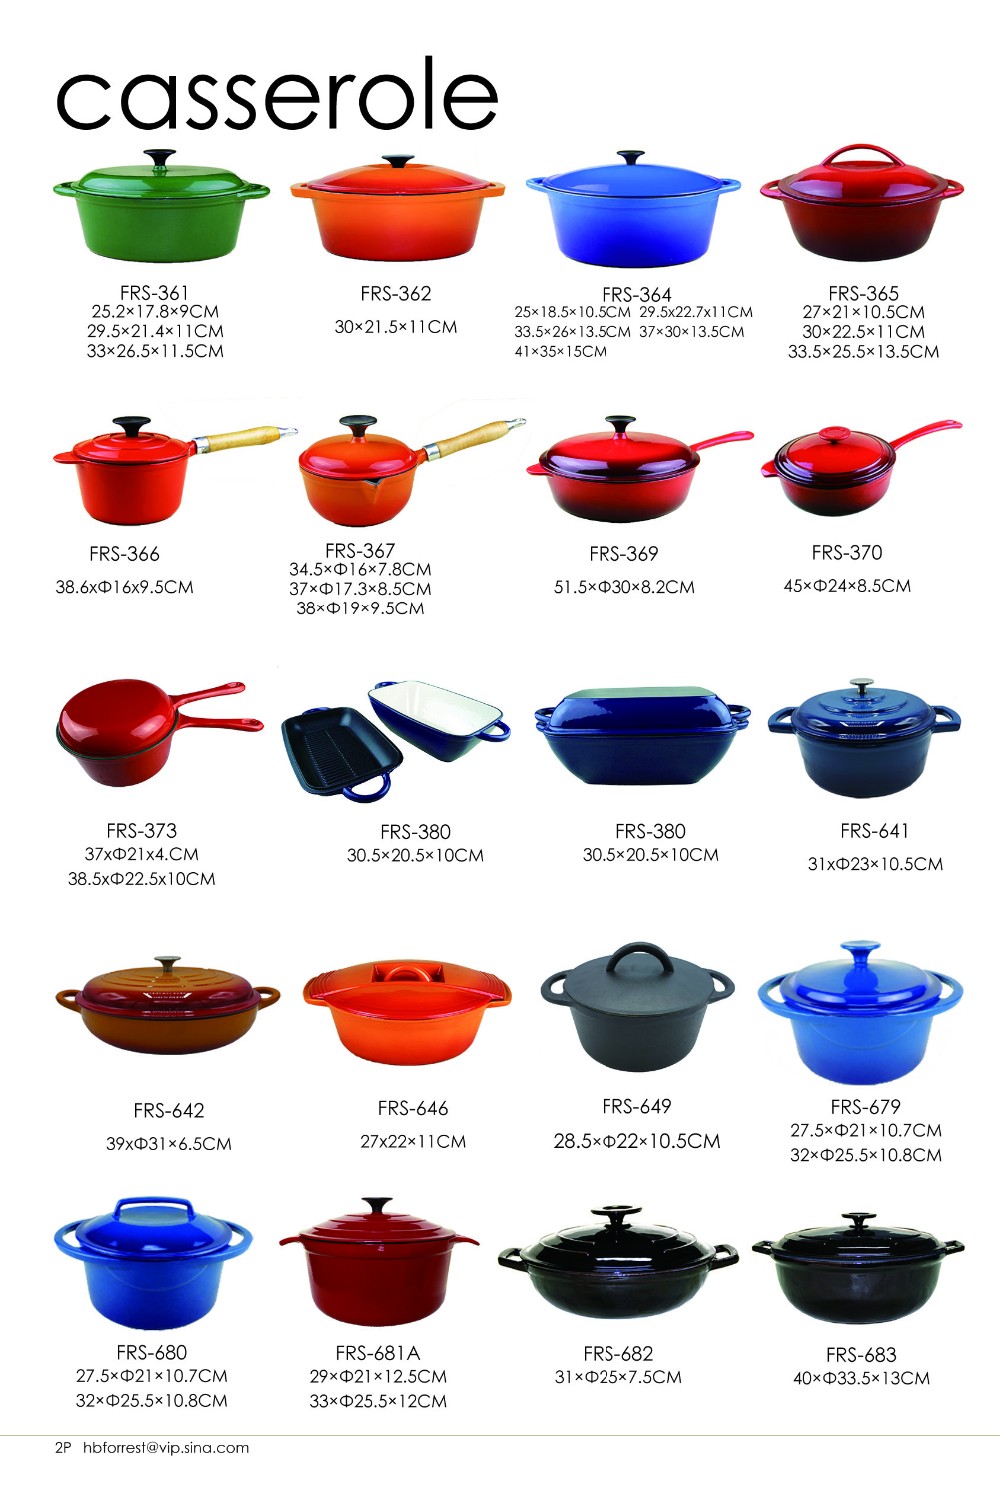 No-stick cast iron enamel kitchen cookware food pot casserole for Amazon